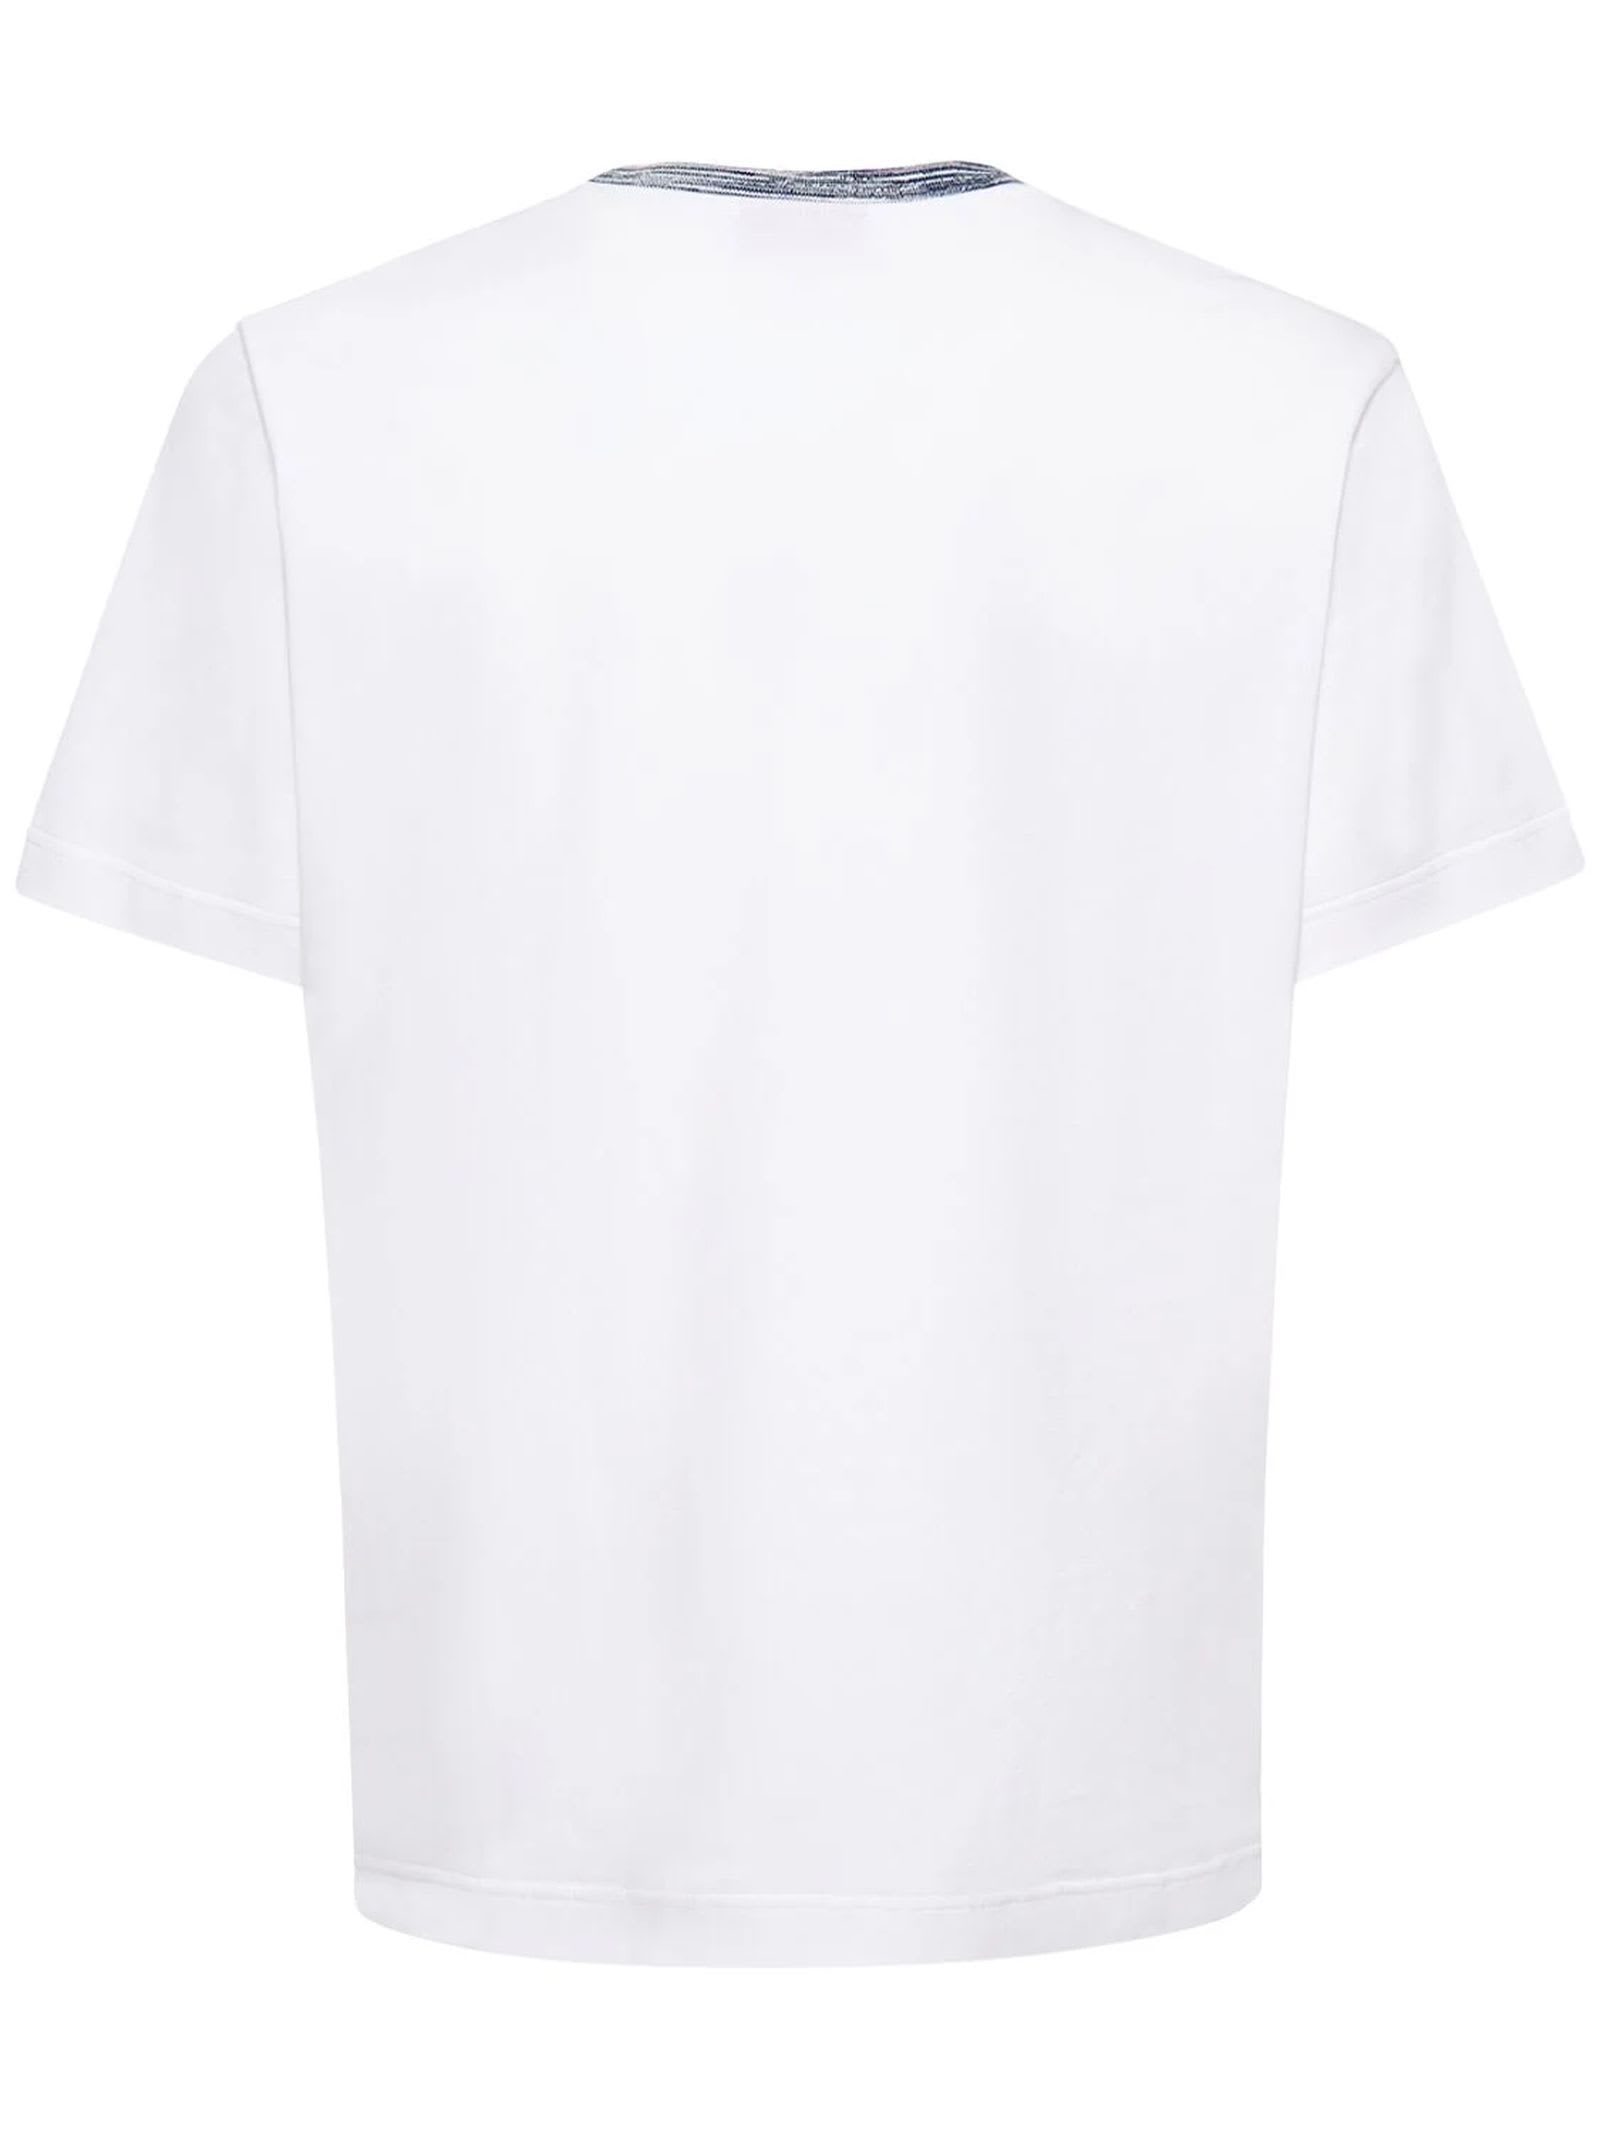 Shop Missoni White Cotton Jersey T-shirt